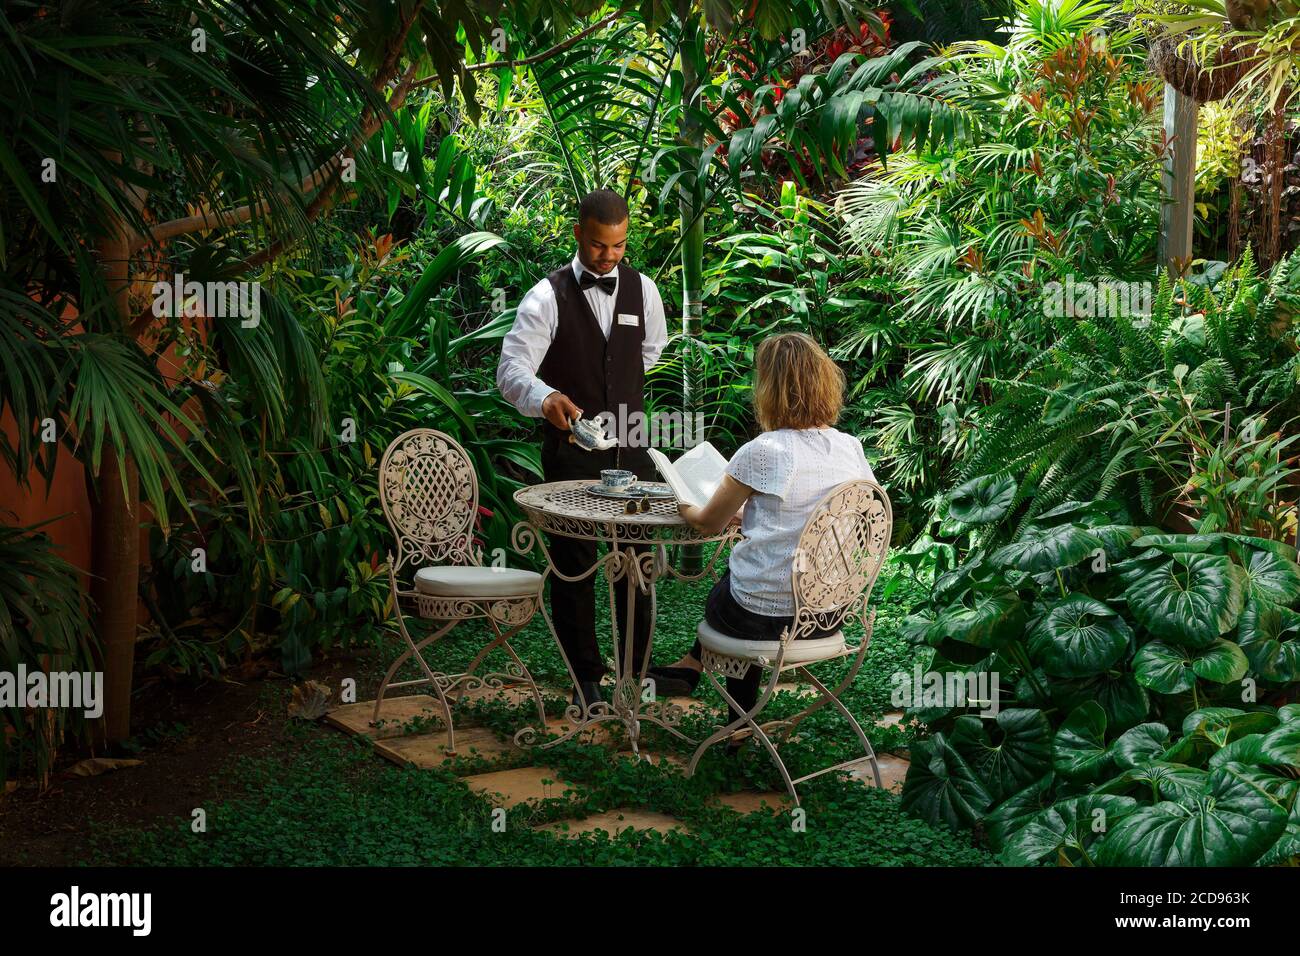 Spagna, Isole Canarie, la Palma, servizio di tè da parte di un membro del personale, nel giardino di un hotel tropicale di lusso Foto Stock